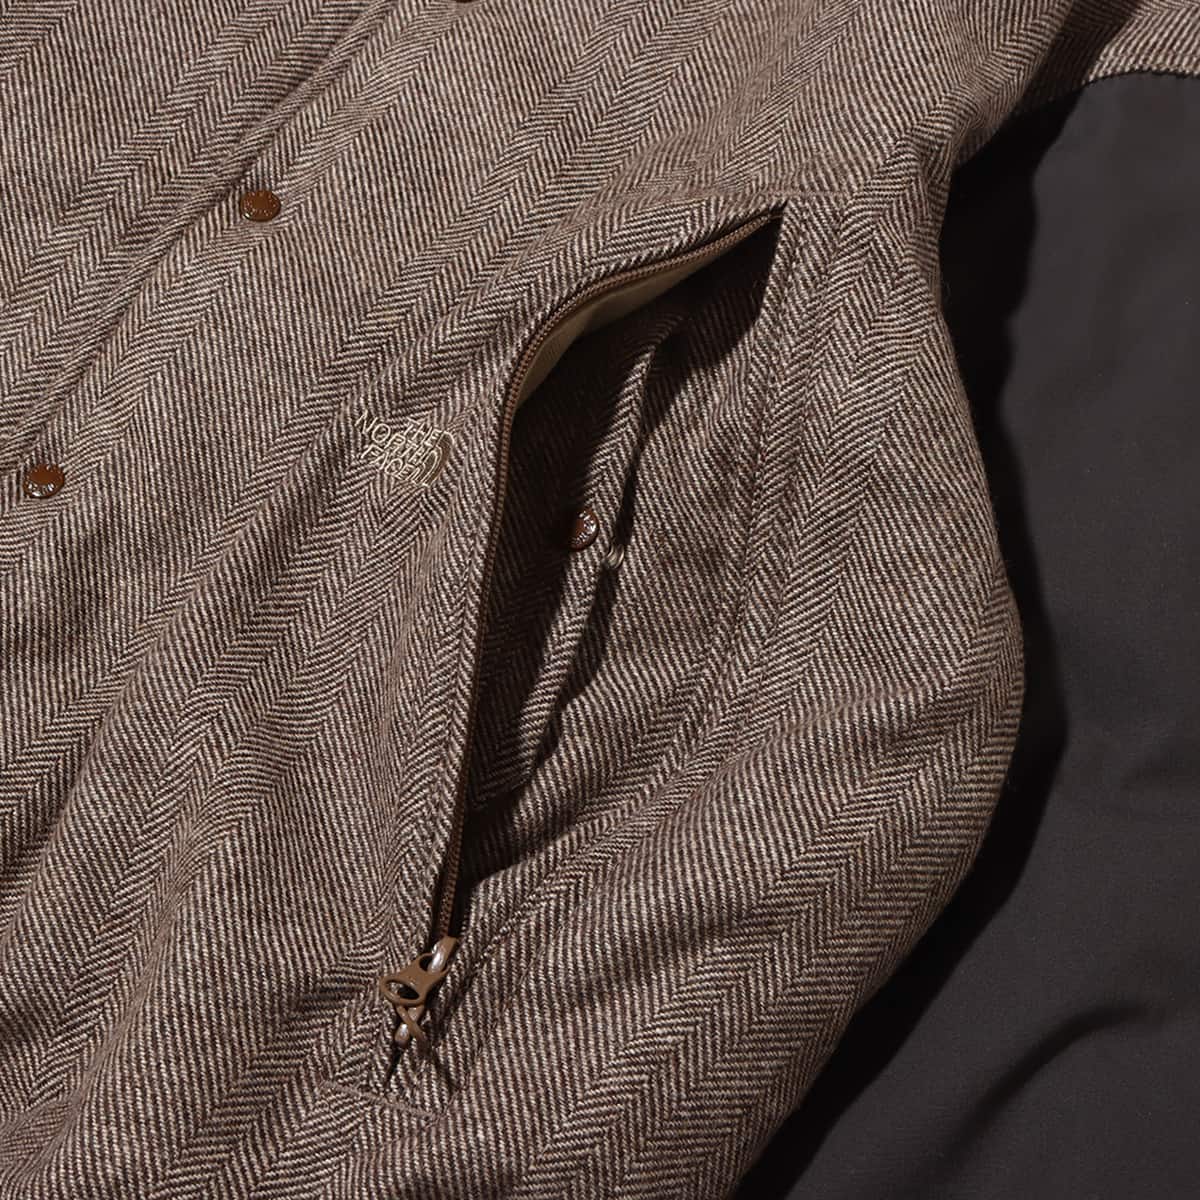 THE NORTH FACE PURPLE LABEL Herringbone Tweed Varsity Jacket Beige